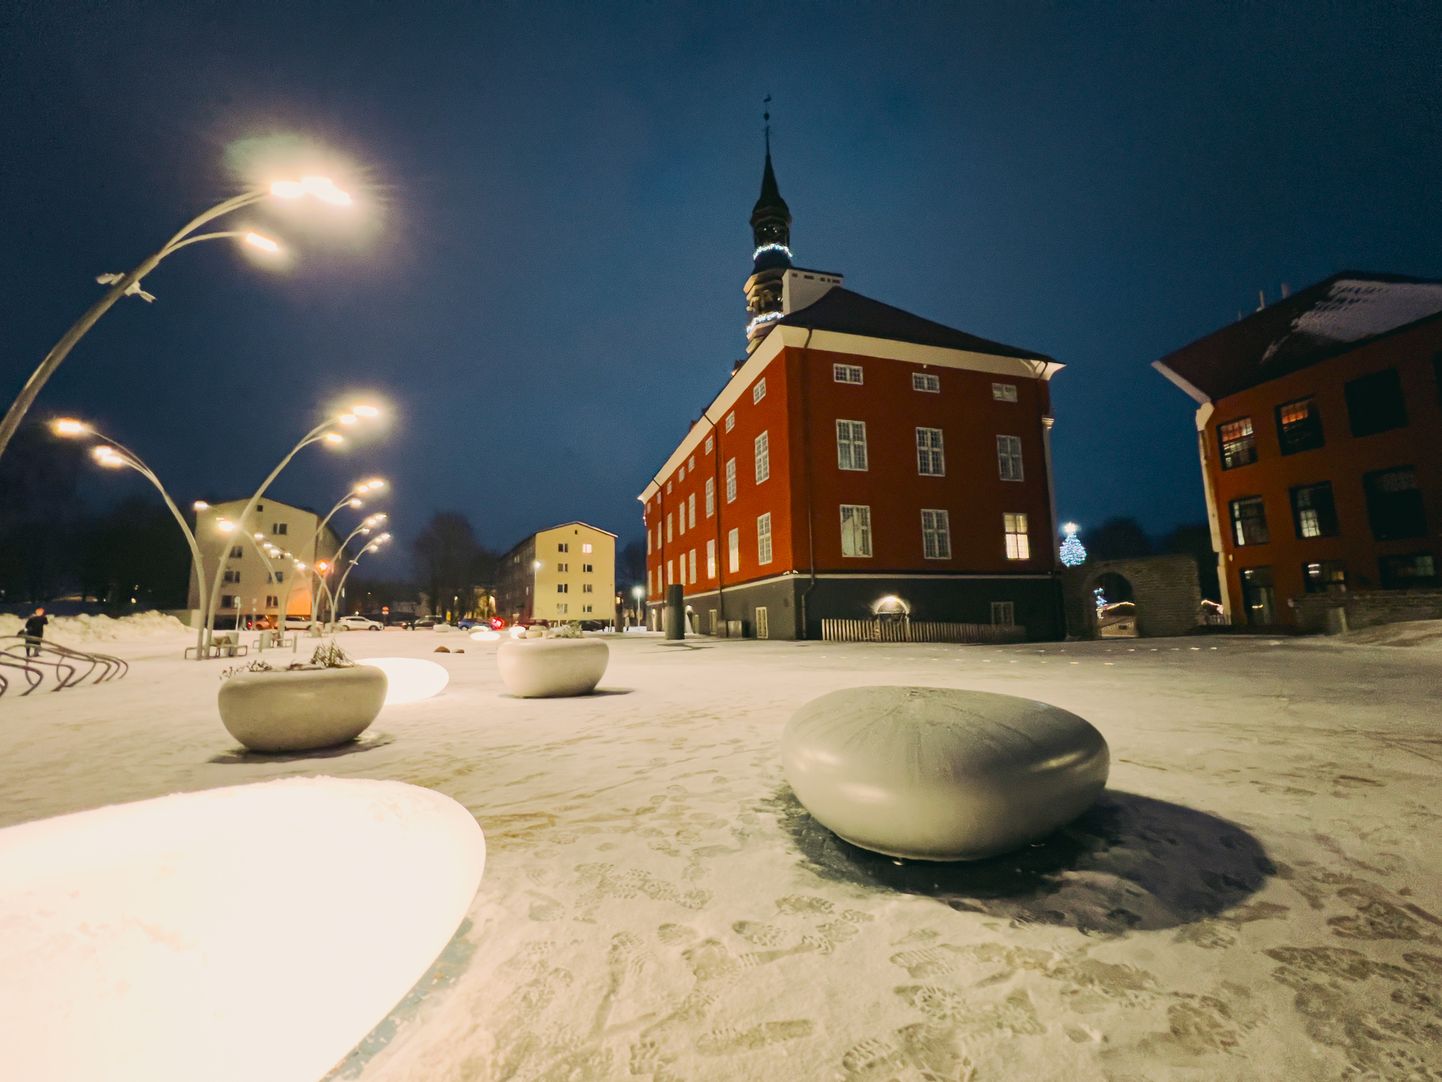 Для новой Стокгольмской площади главная тематика - вода. Покрытие площади преимущественно синего цвета, что из-за снега не бросается в глаза, а малые формы выполнены в виде речной гальки.